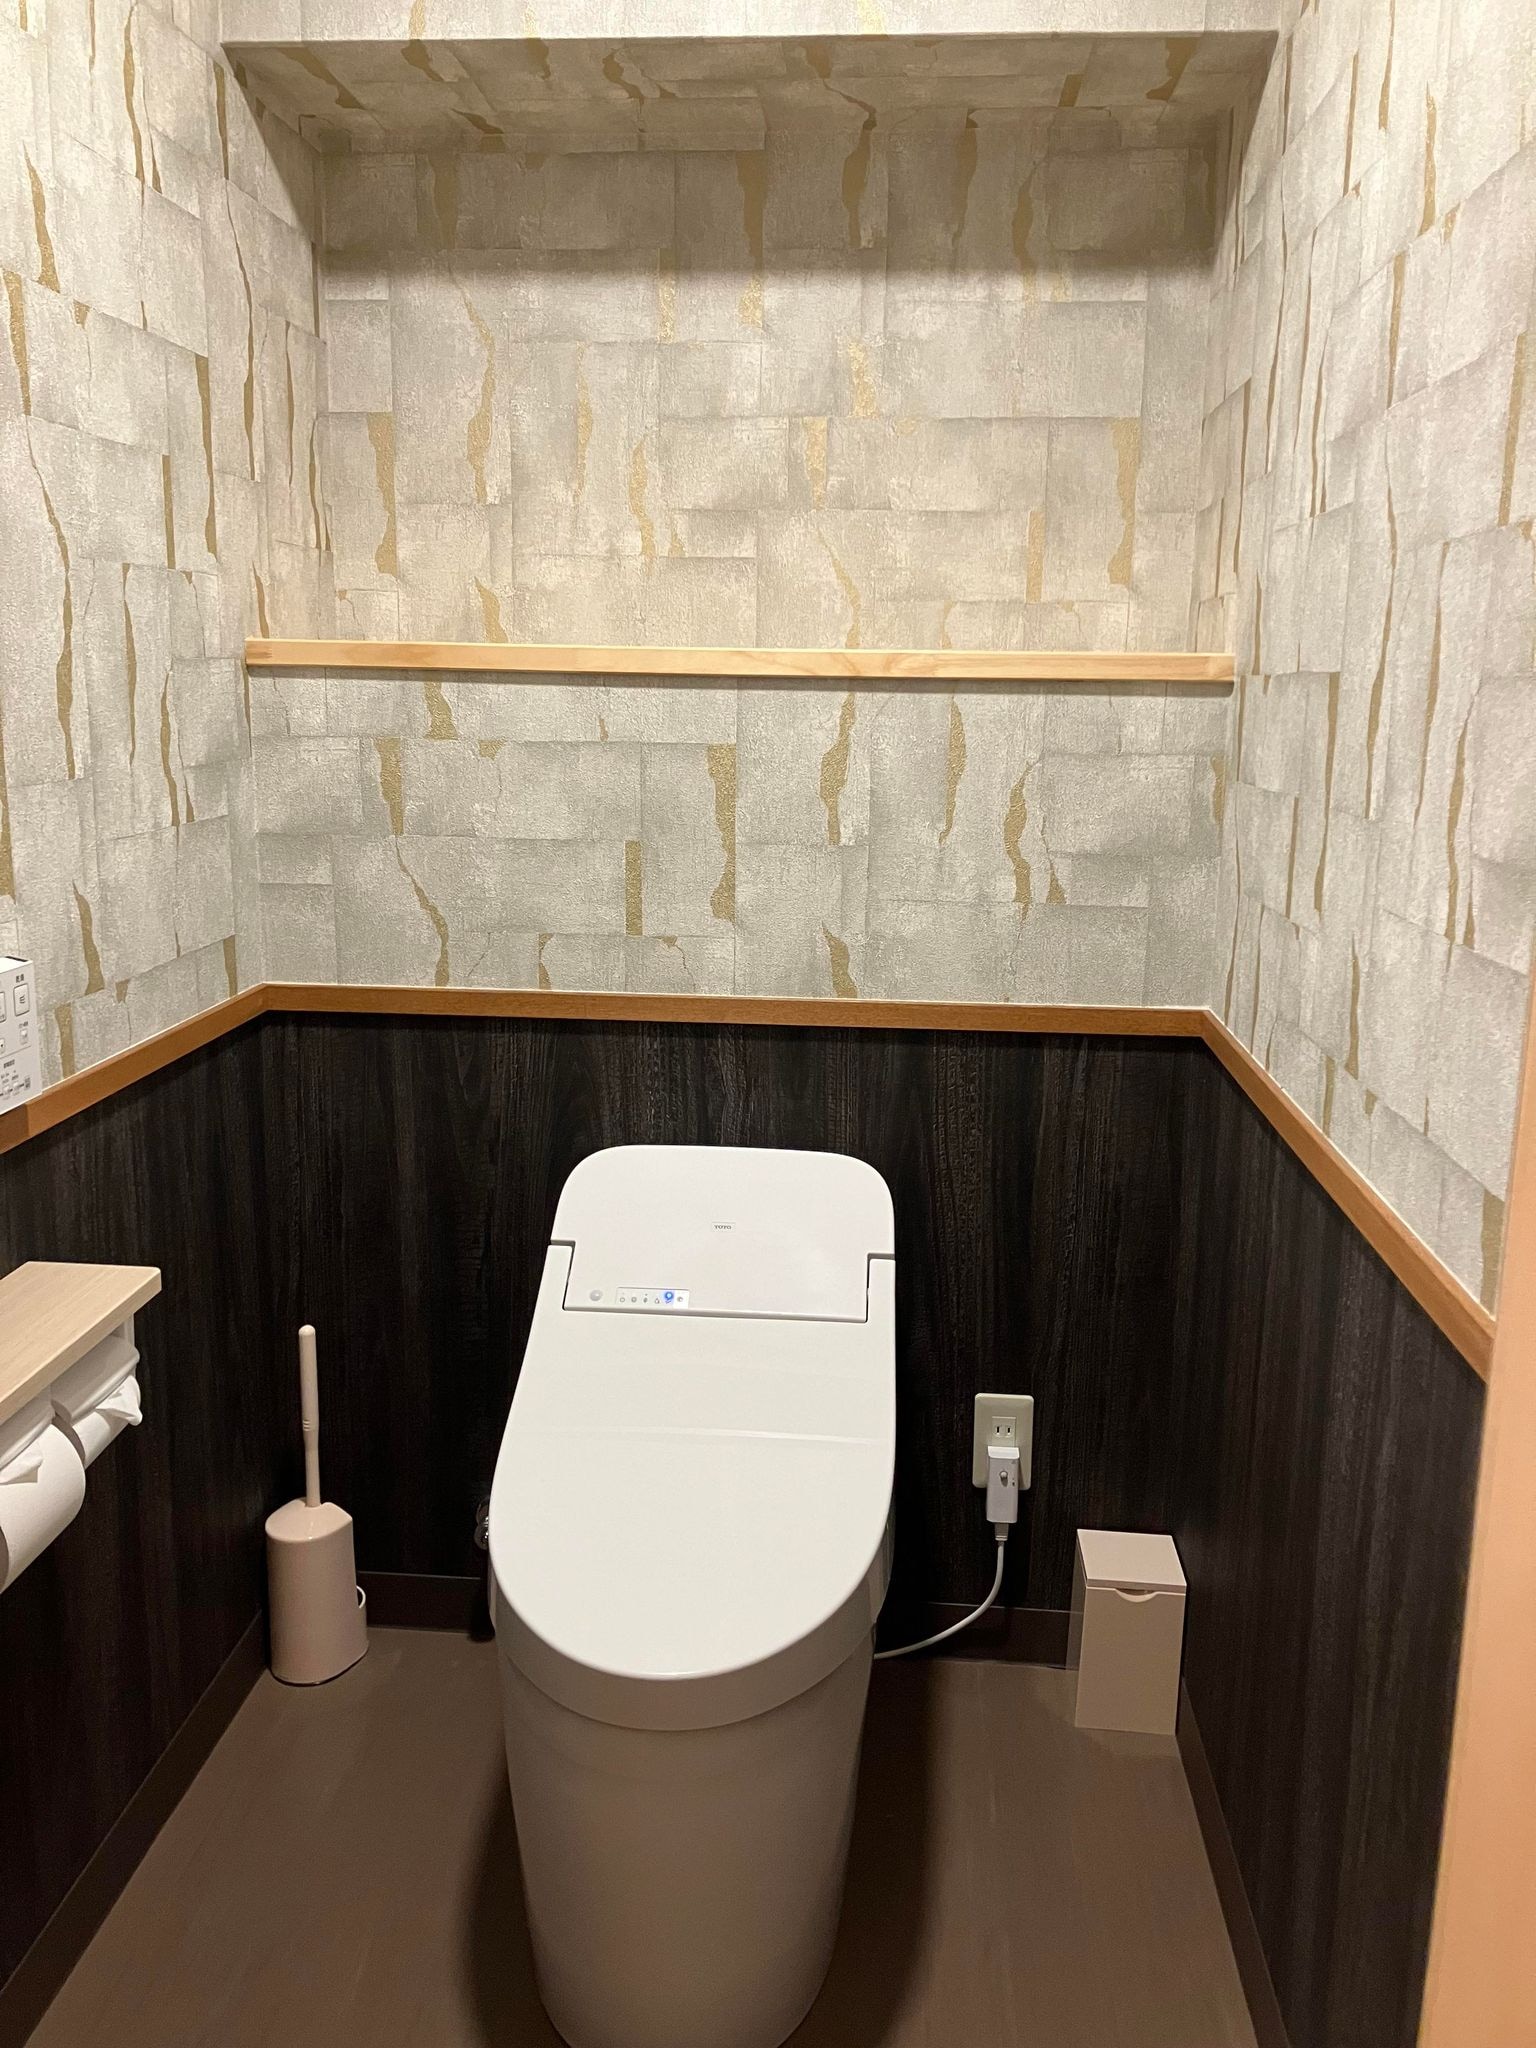 Toilet ruangan khusus